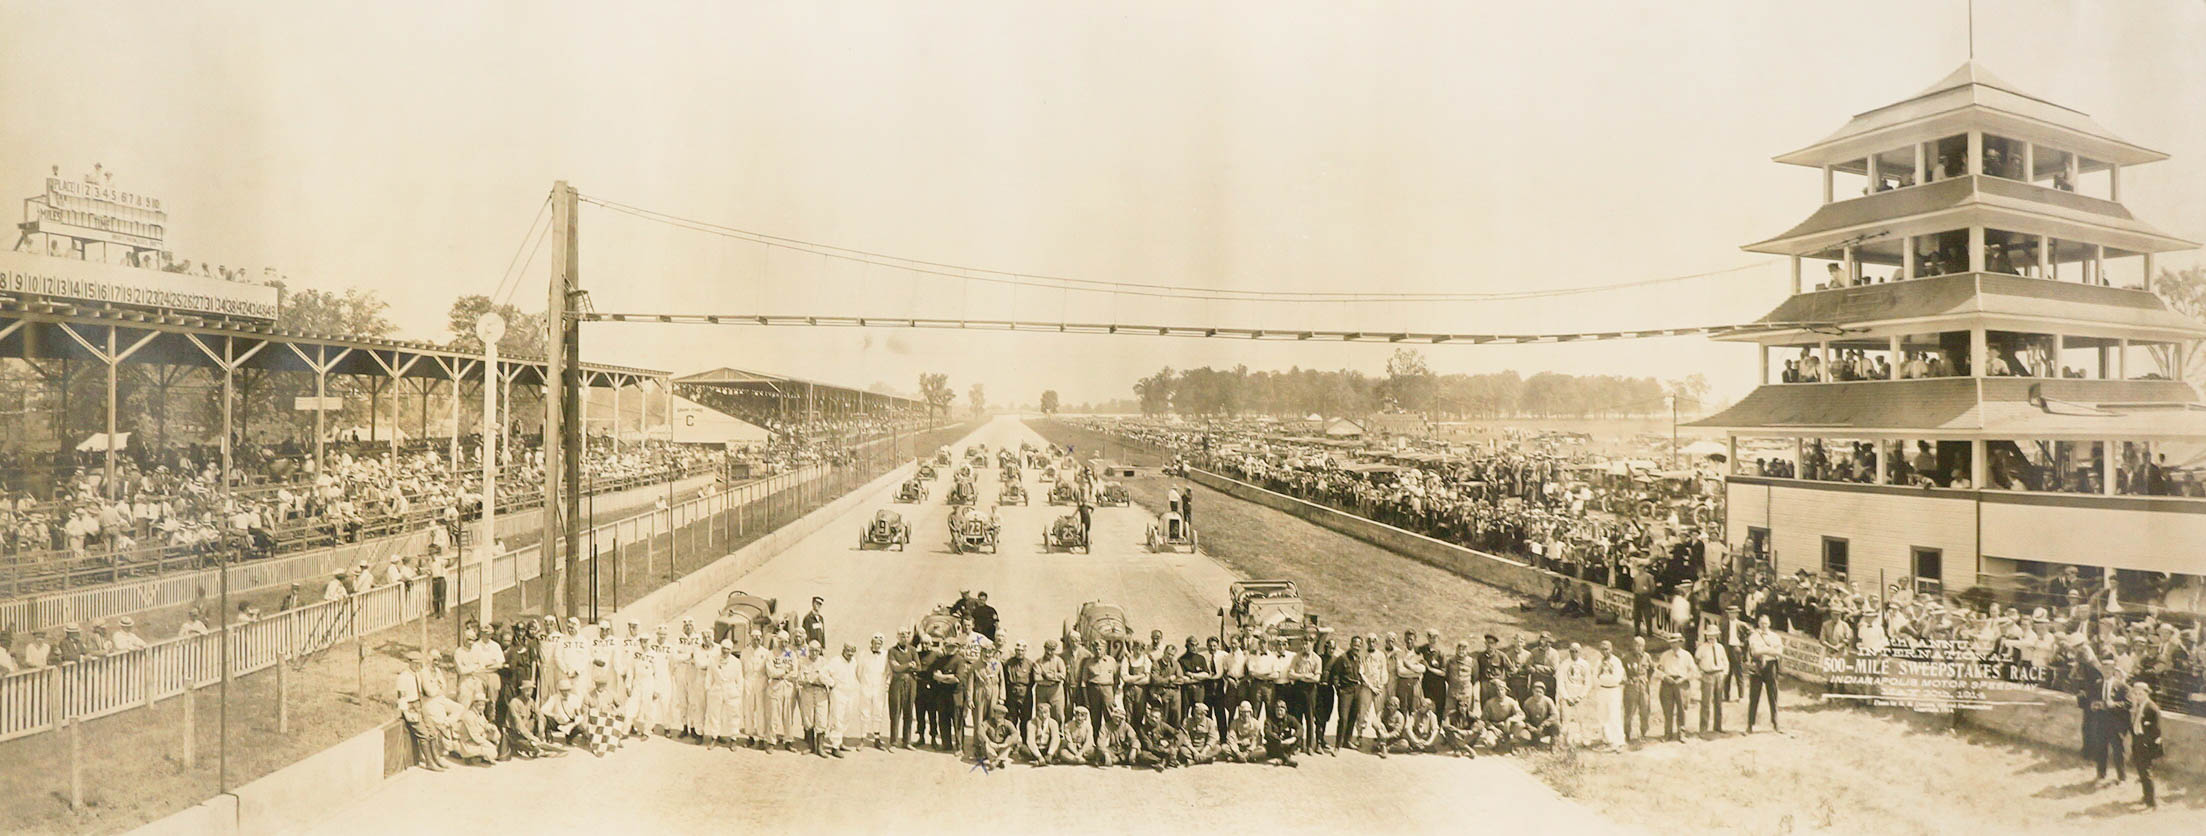 1914 Original Indy 500 Panoramic Photograph